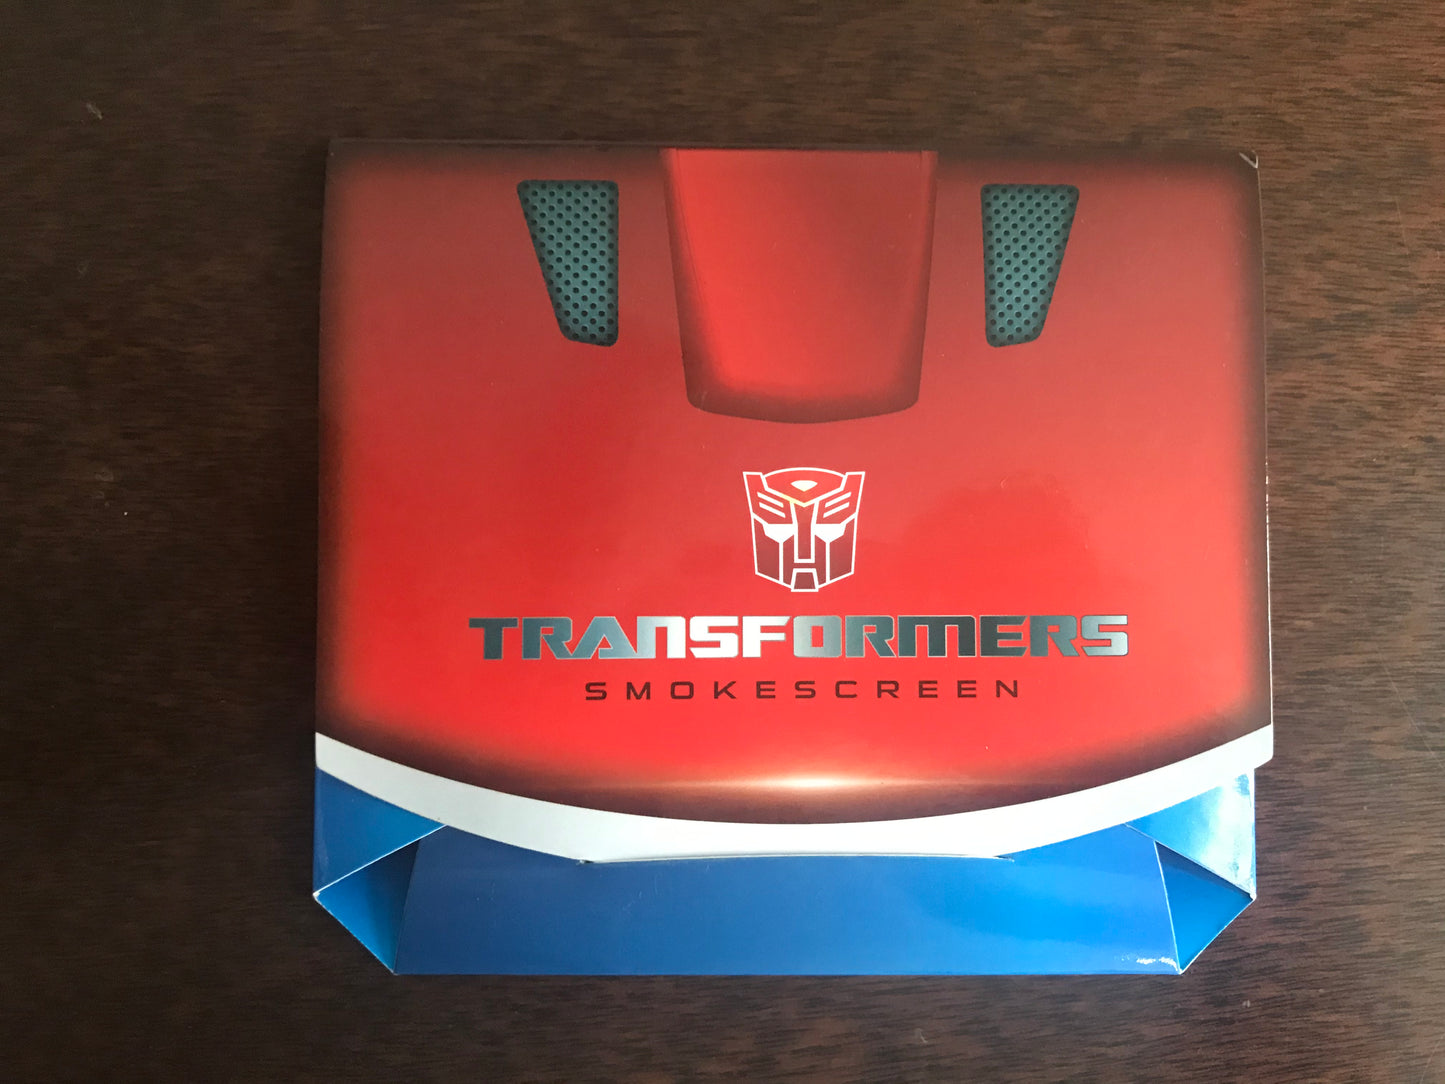 [EN STOCK] Accesorio Moneda Metálica Conmemorativa - Transformers MP-19 Smokescreen marca Hasbro / Takara